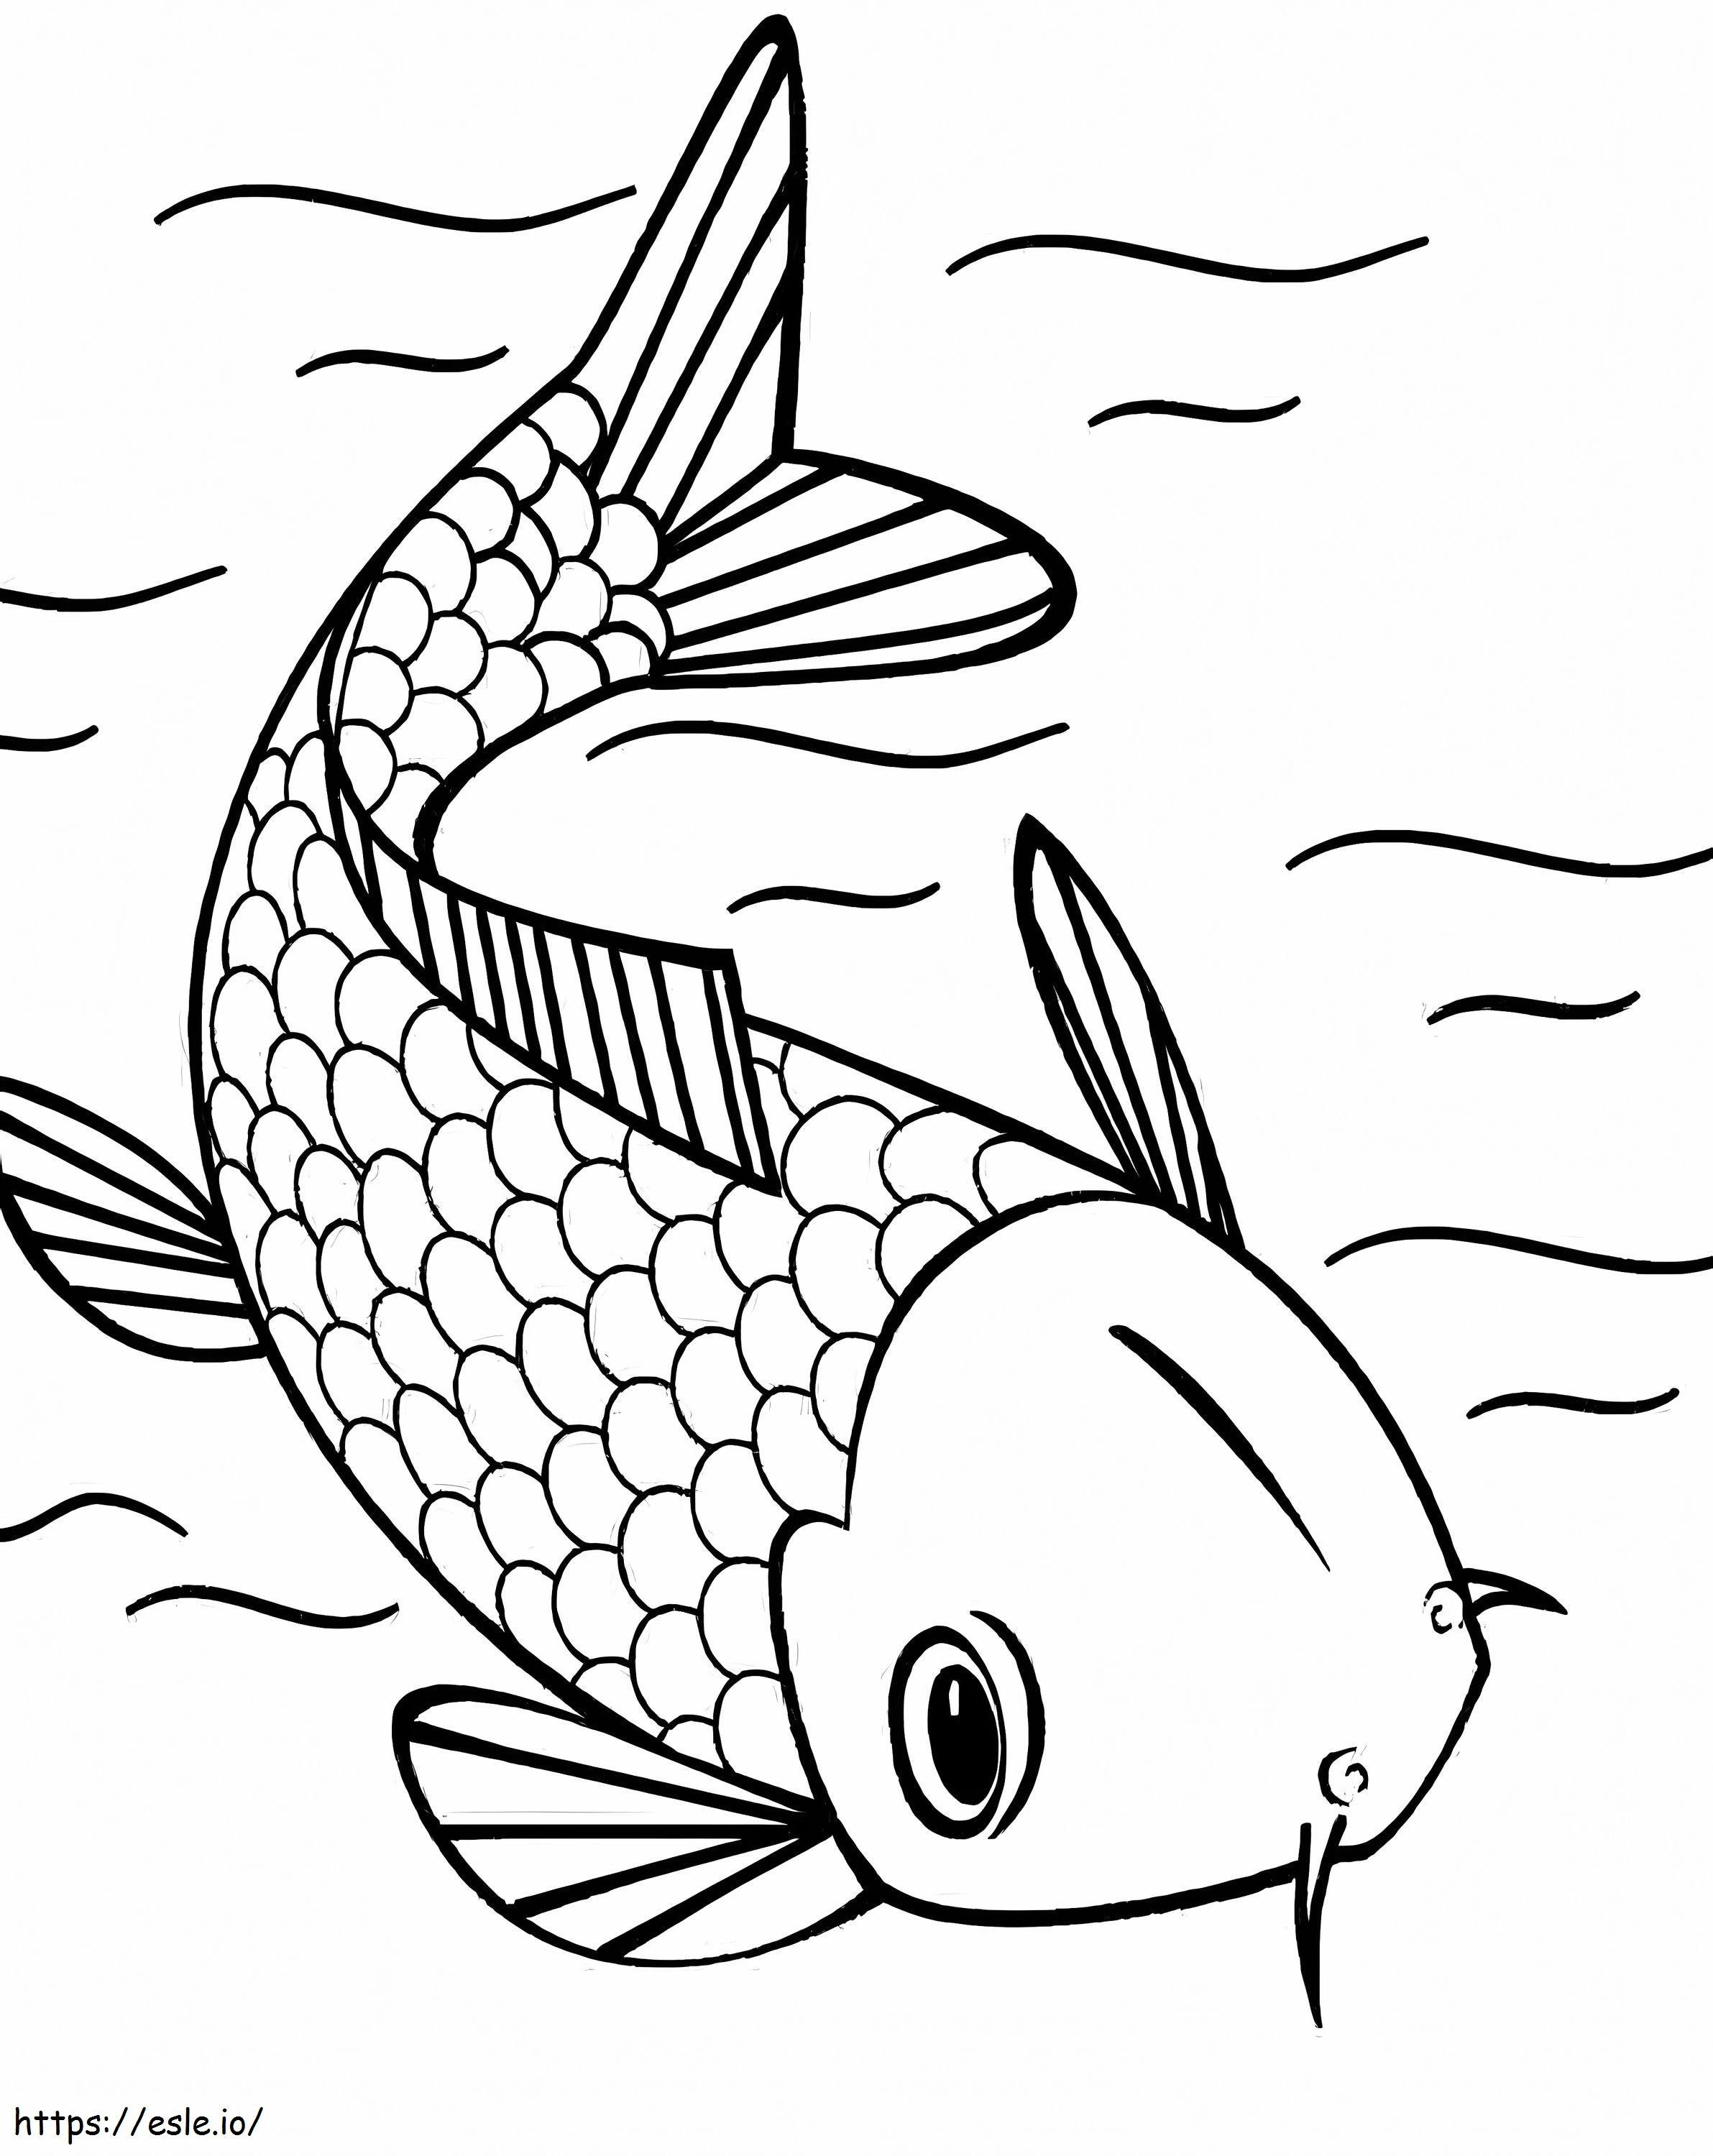 Pływanie ryb Koi kolorowanka